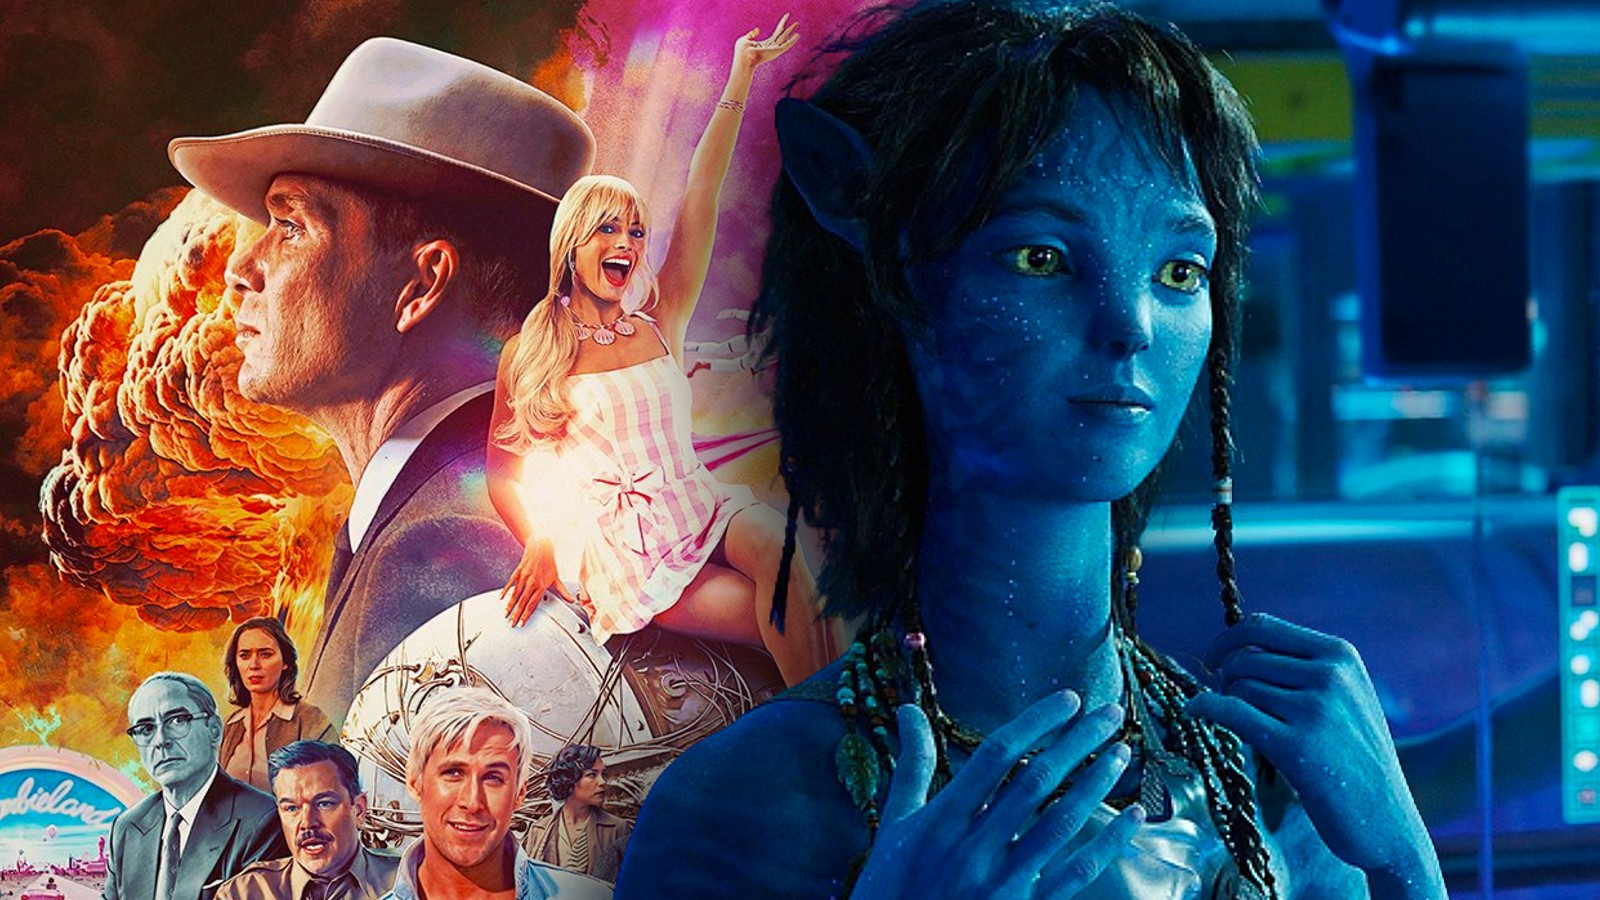 Plakát pro Barbenheimer (Barbie a Oppenheimer) a stále z Avatar 2, jeden z nejvyšších filmů všech dob